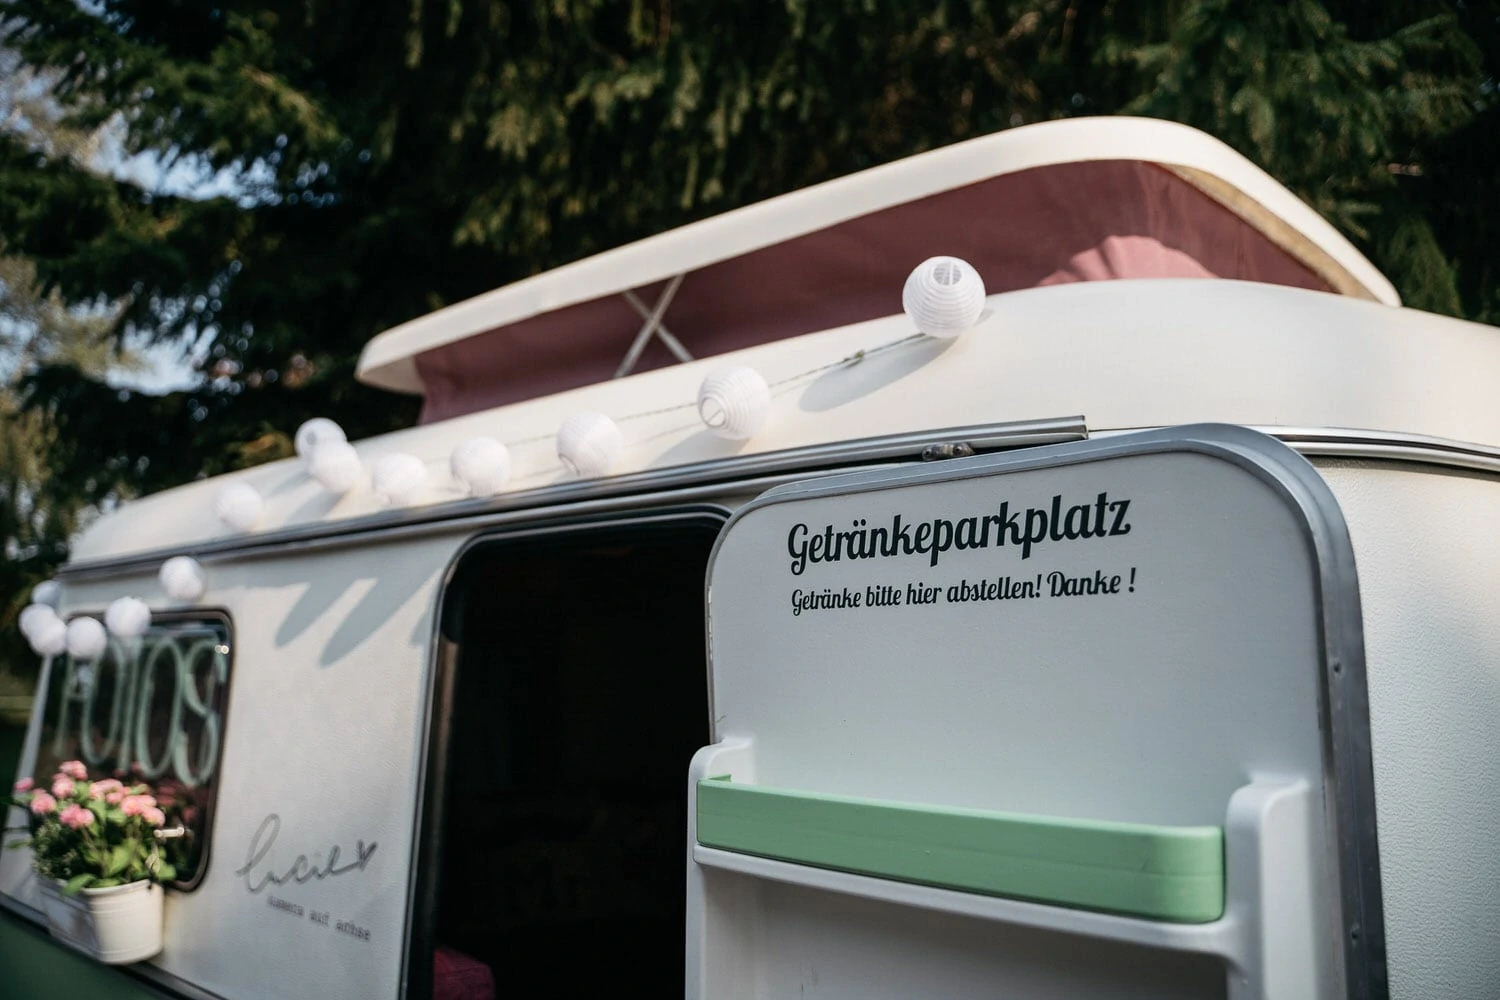 Unsere mobile Fotobox im Caravan "Lucie" - Getränkeparkplatz